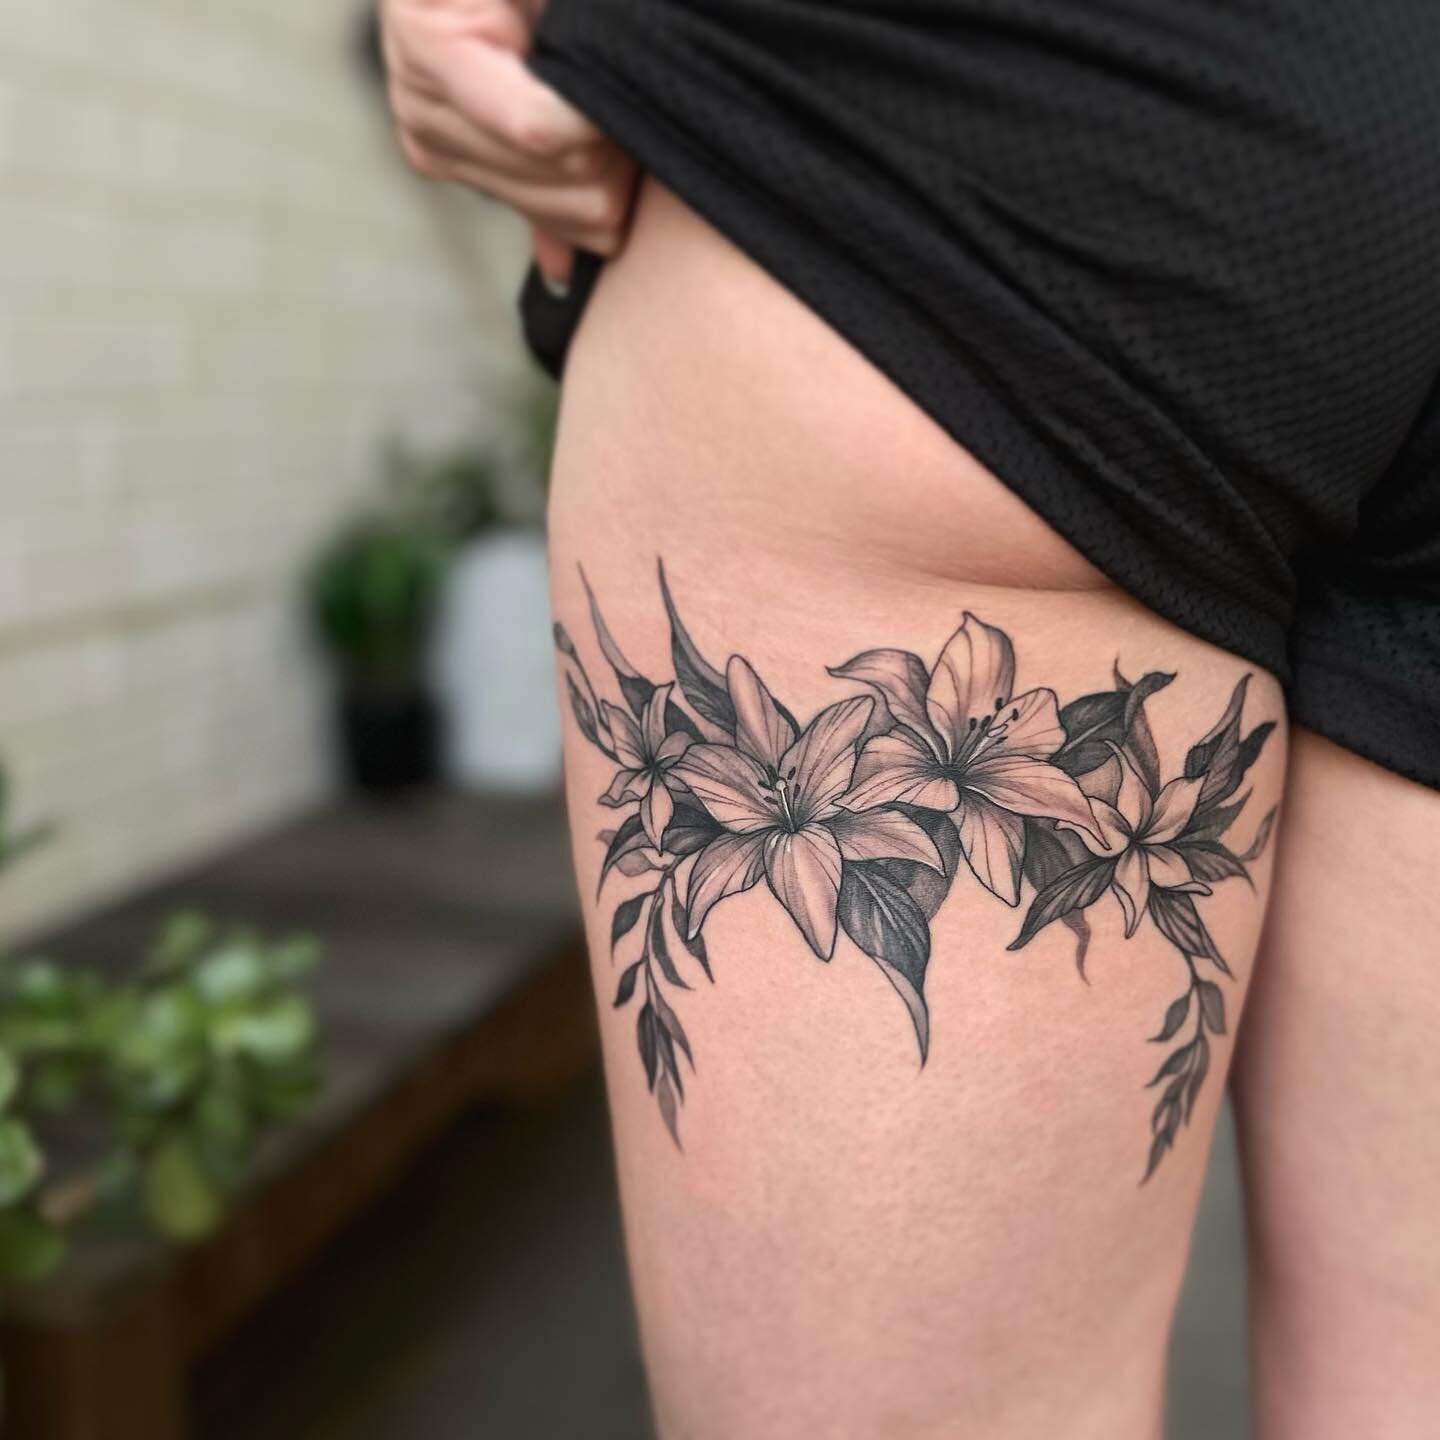 Lillies for Tayla ✨
made at @wa.ink.tattoo 

.
.
.
.
#perthtattoo#perthtattooartists#perthtattooartist#finelinetattooperth#flowertattooperth